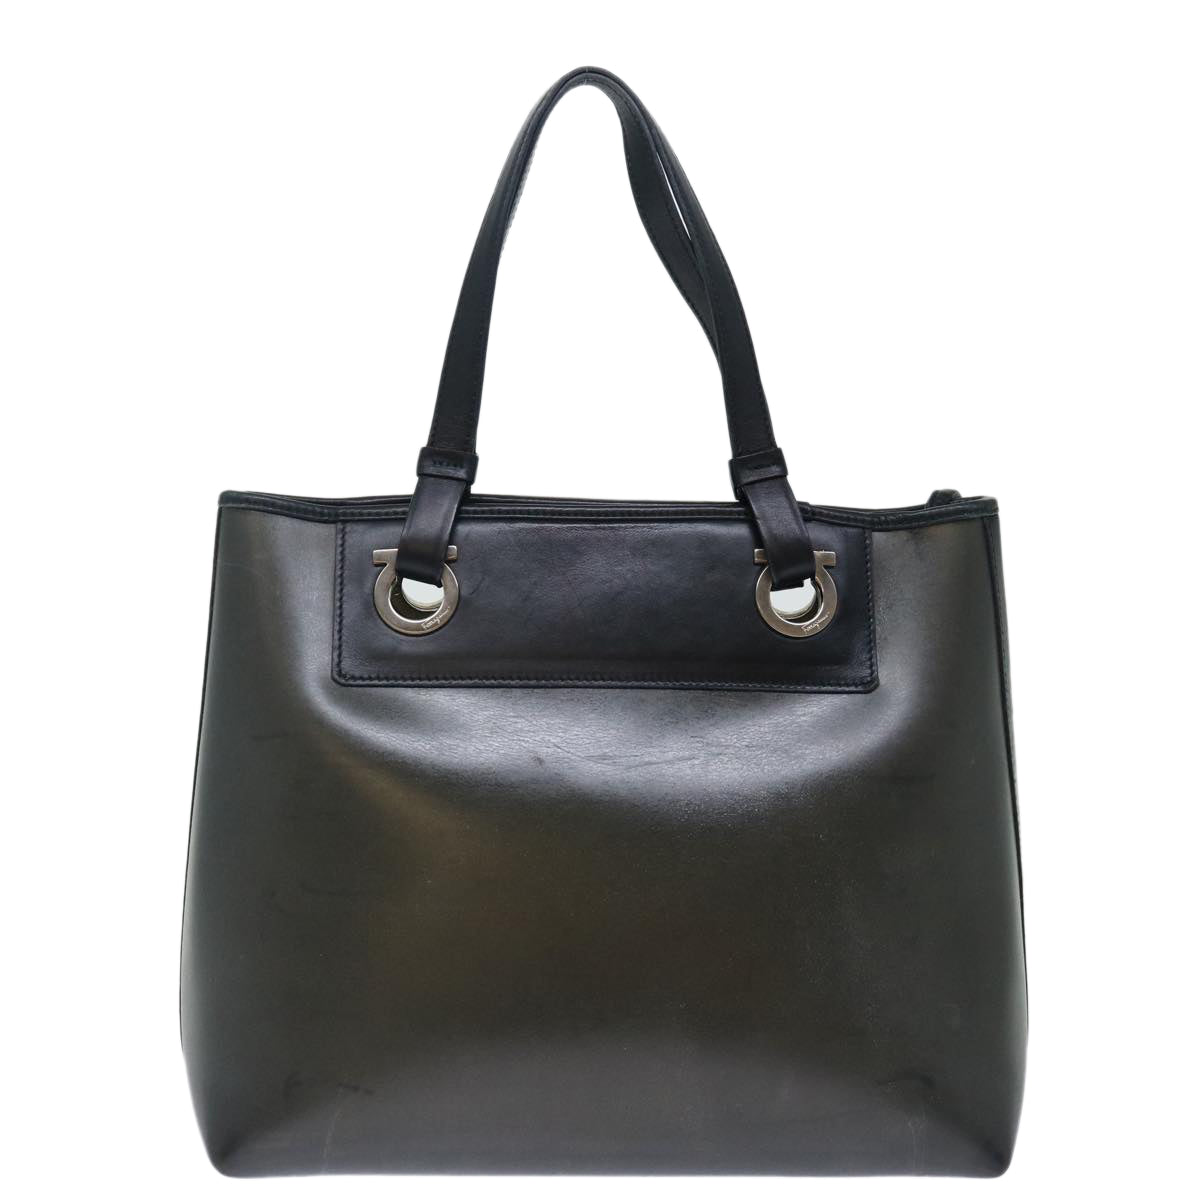 Salvatore Ferragamo Hand Bag Leather Black Auth 71582 - 0